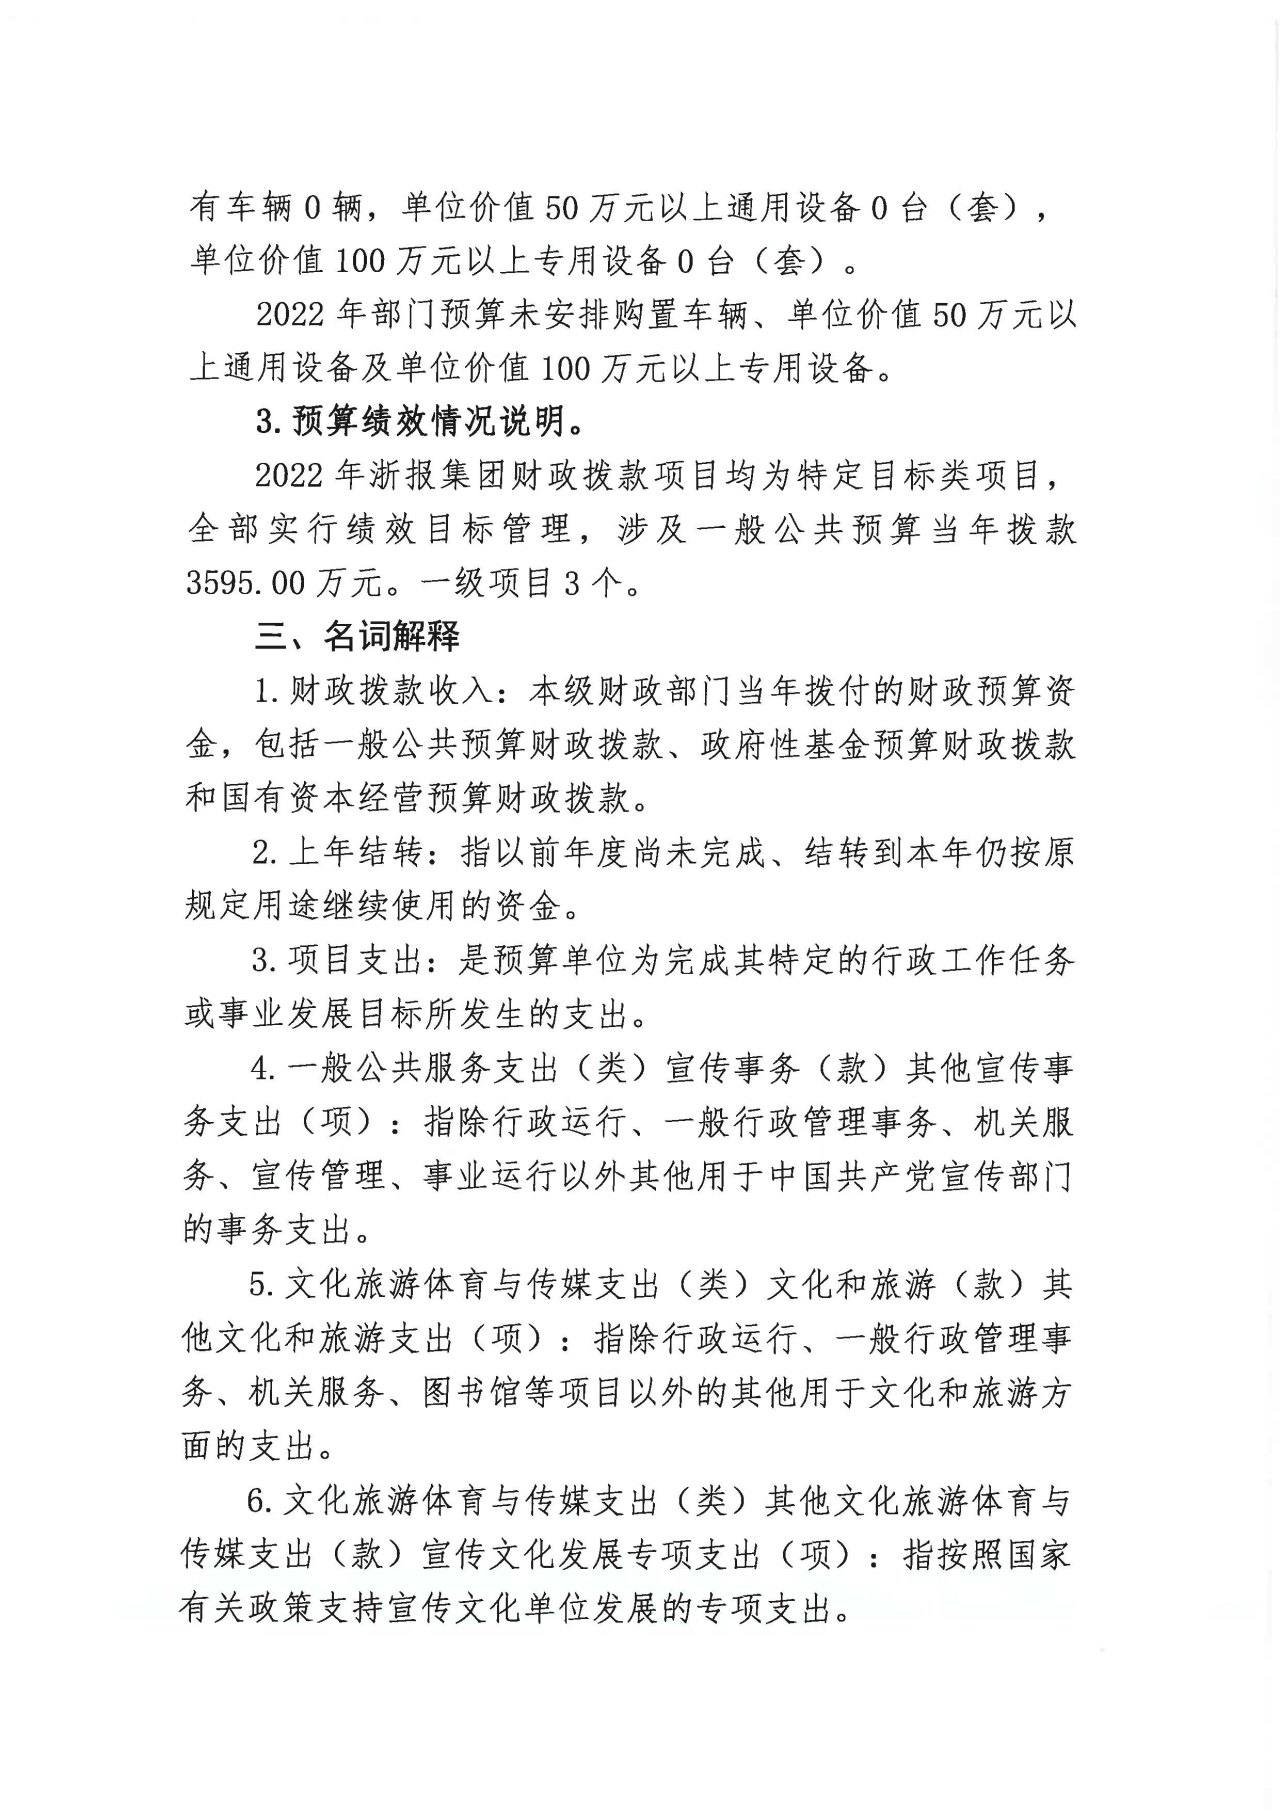 浙江日报报业集团2022年部门预算公开_页面_08.jpg